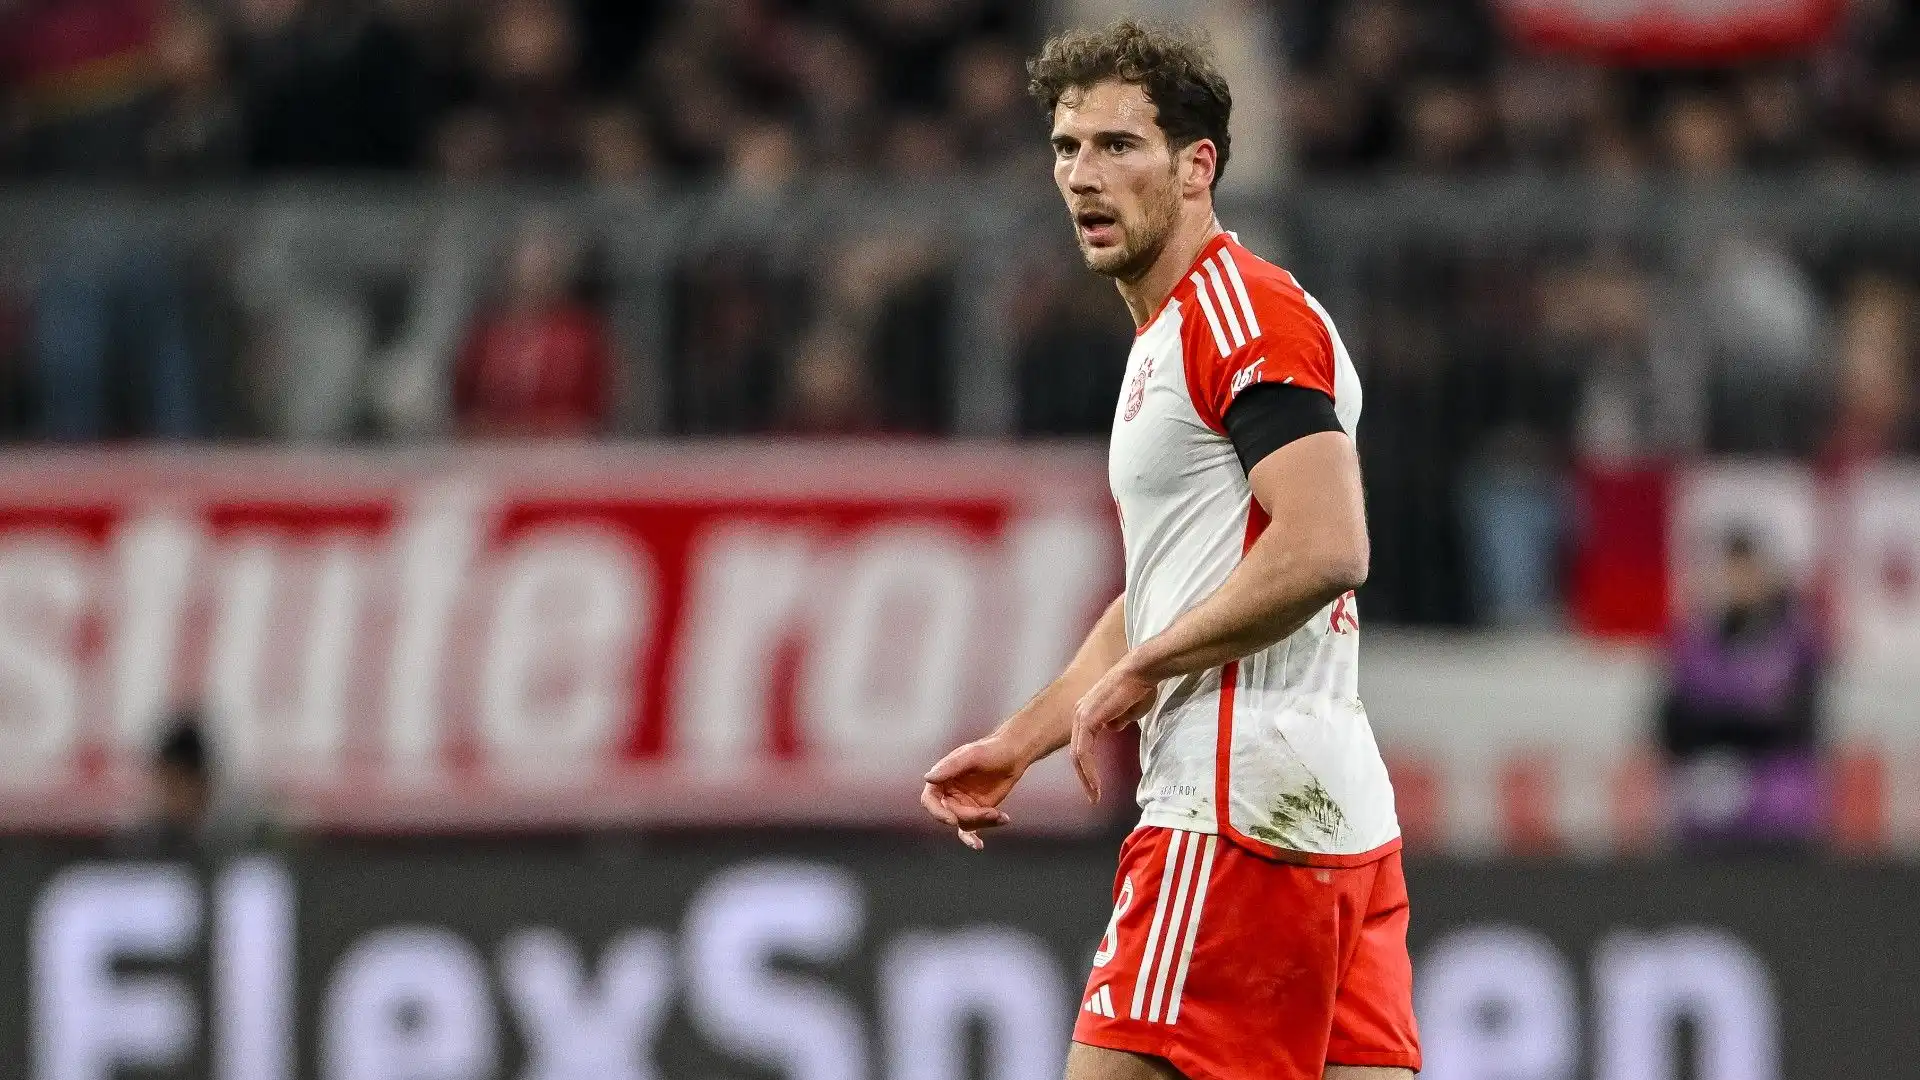 Dopo i campionati Europei il calciatore potrebbe lasciare il Bayern Monaco